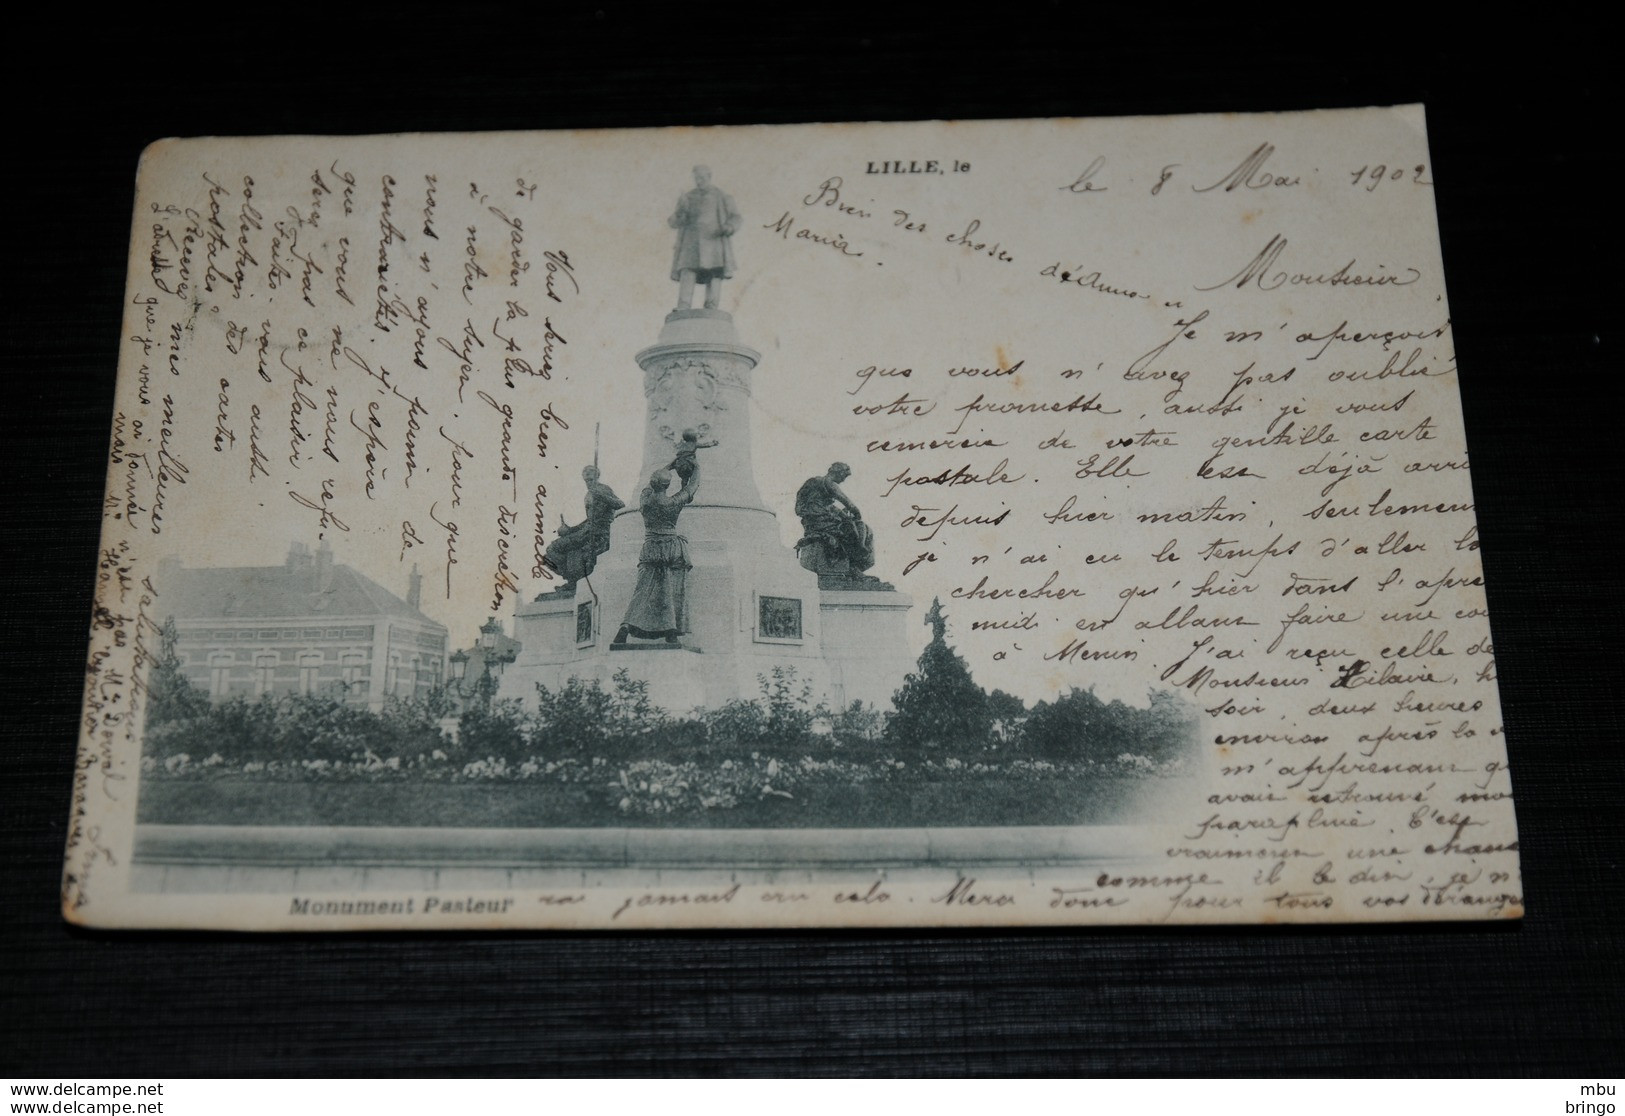 A9960          LILLE, MONUMENT PASTEUR - 1902 - Lille